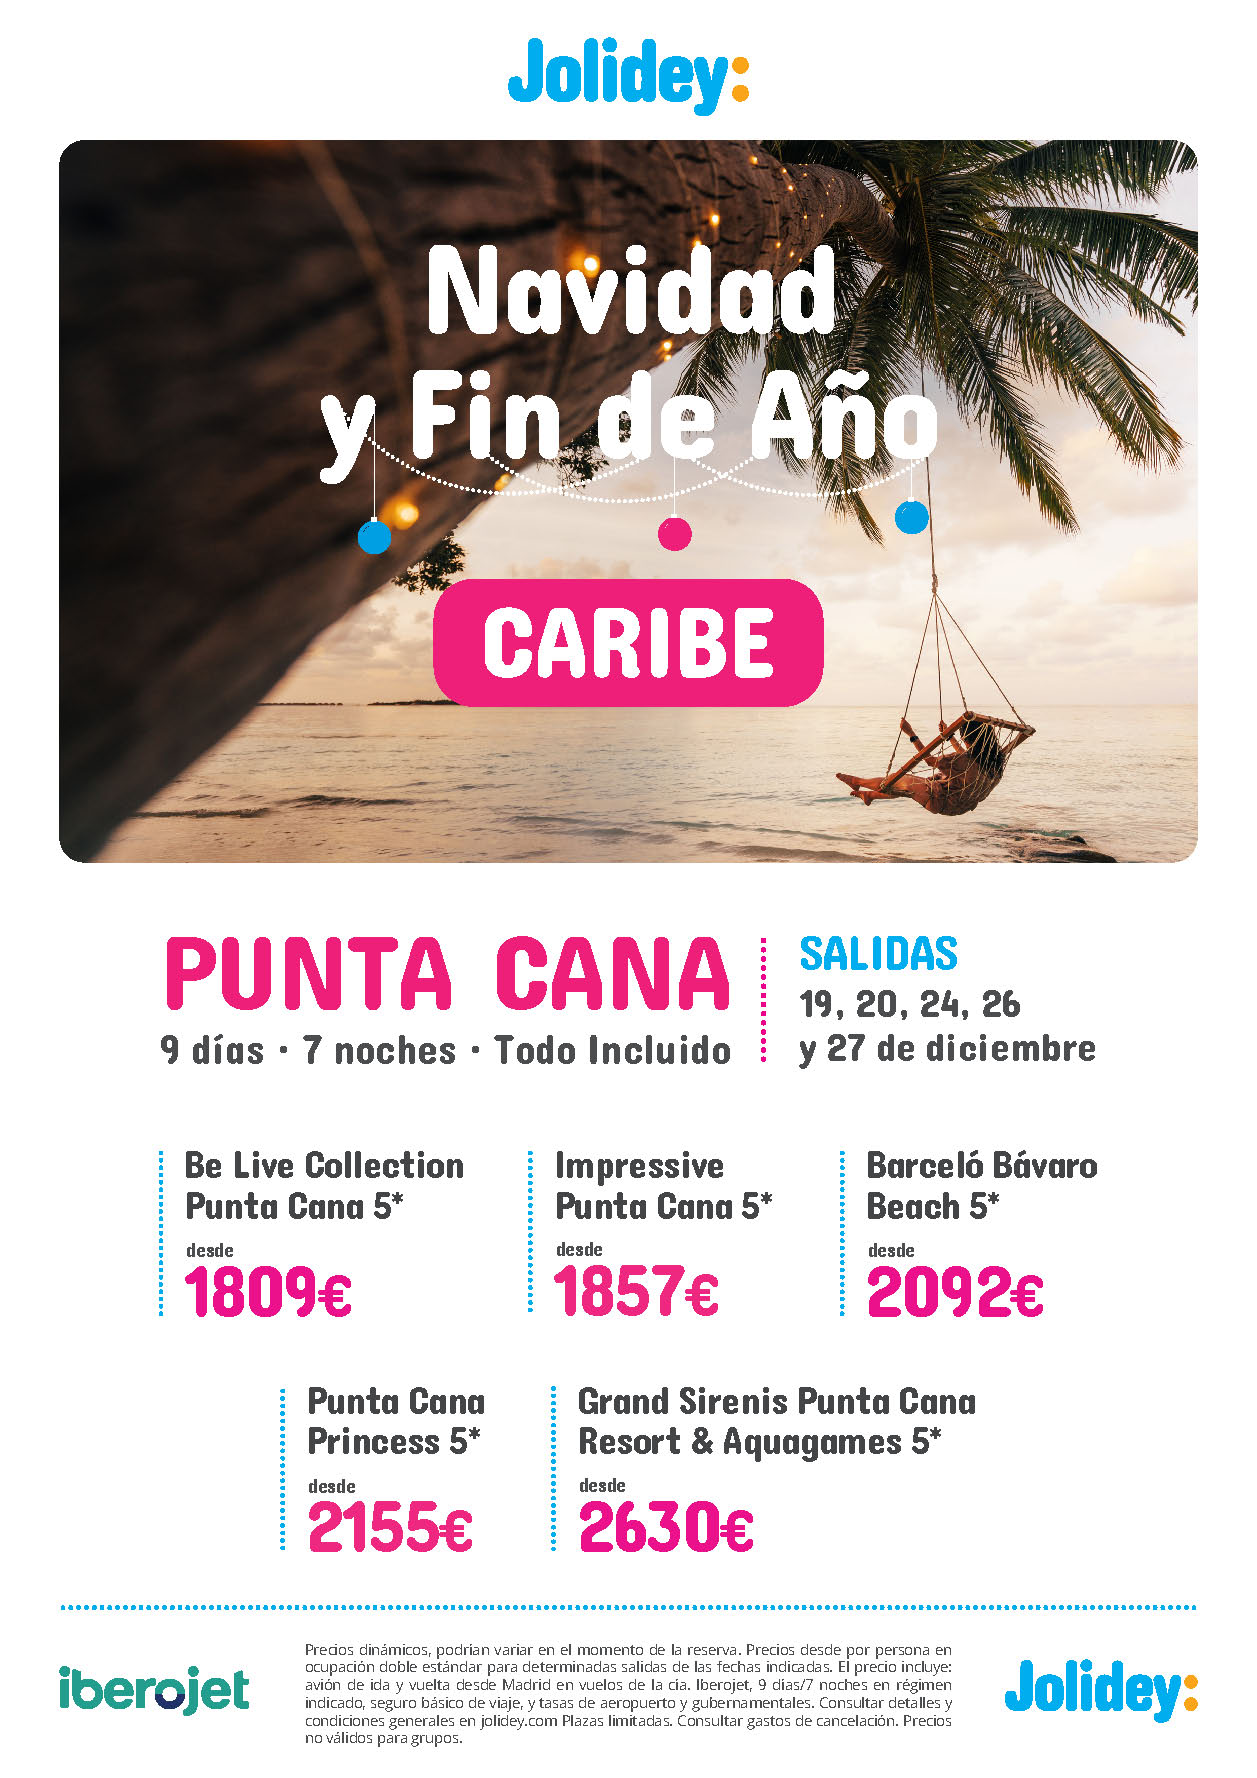 Ofertas Jolidey Navidad y Fin de Año 2022 en Republica Dominicana Punta Cana Todo Incluido 9 dias salidas en vuelo directo desde Madrid